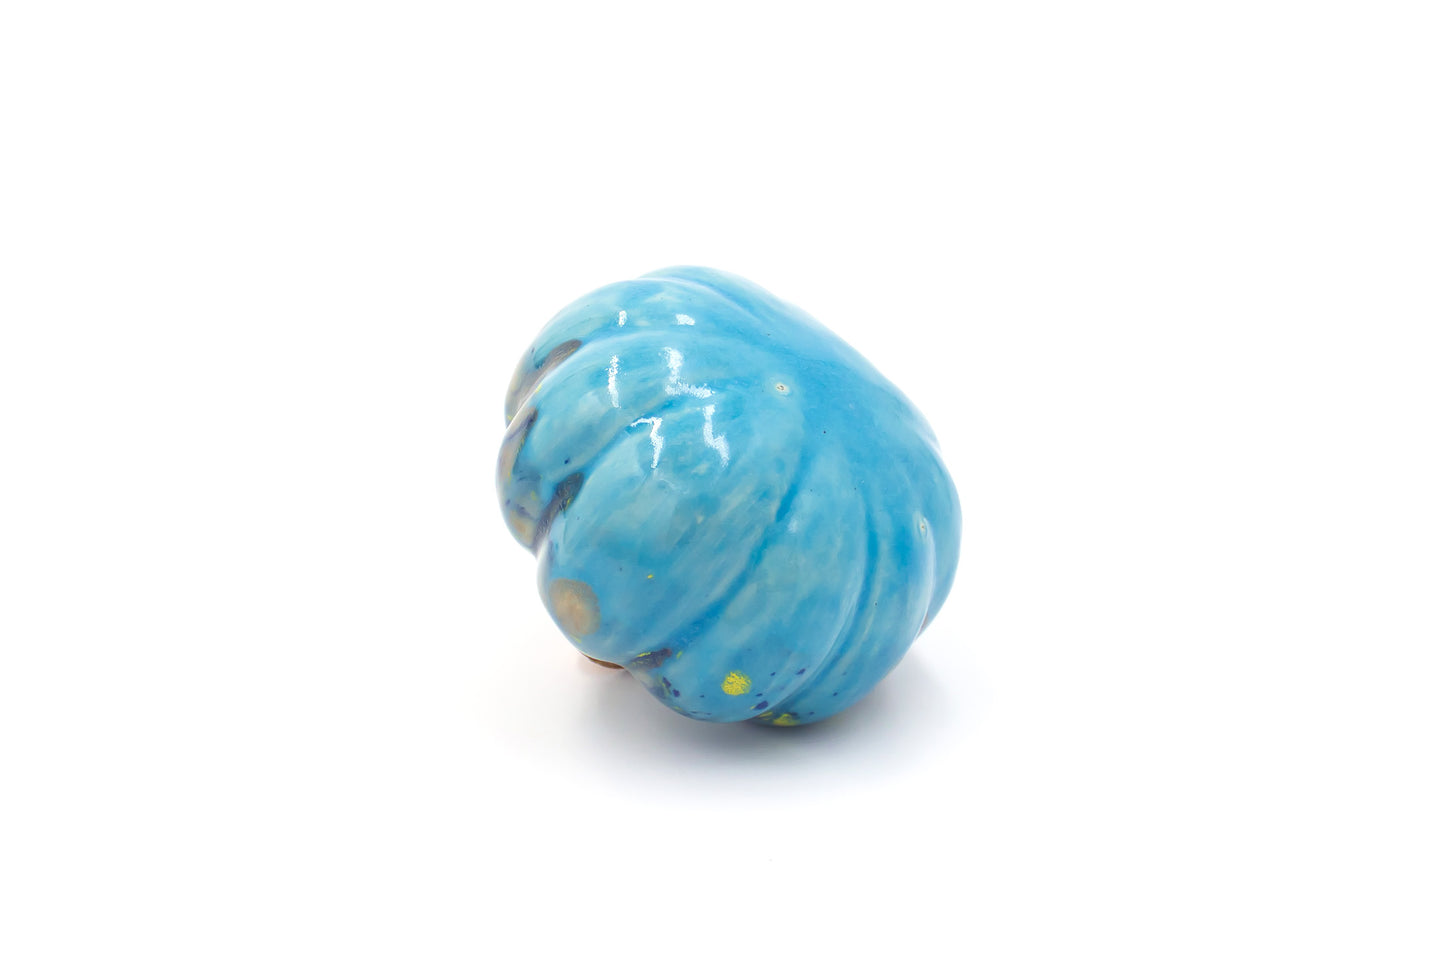 Dynia ceramiczna w kolorze niebieskim z plamkami